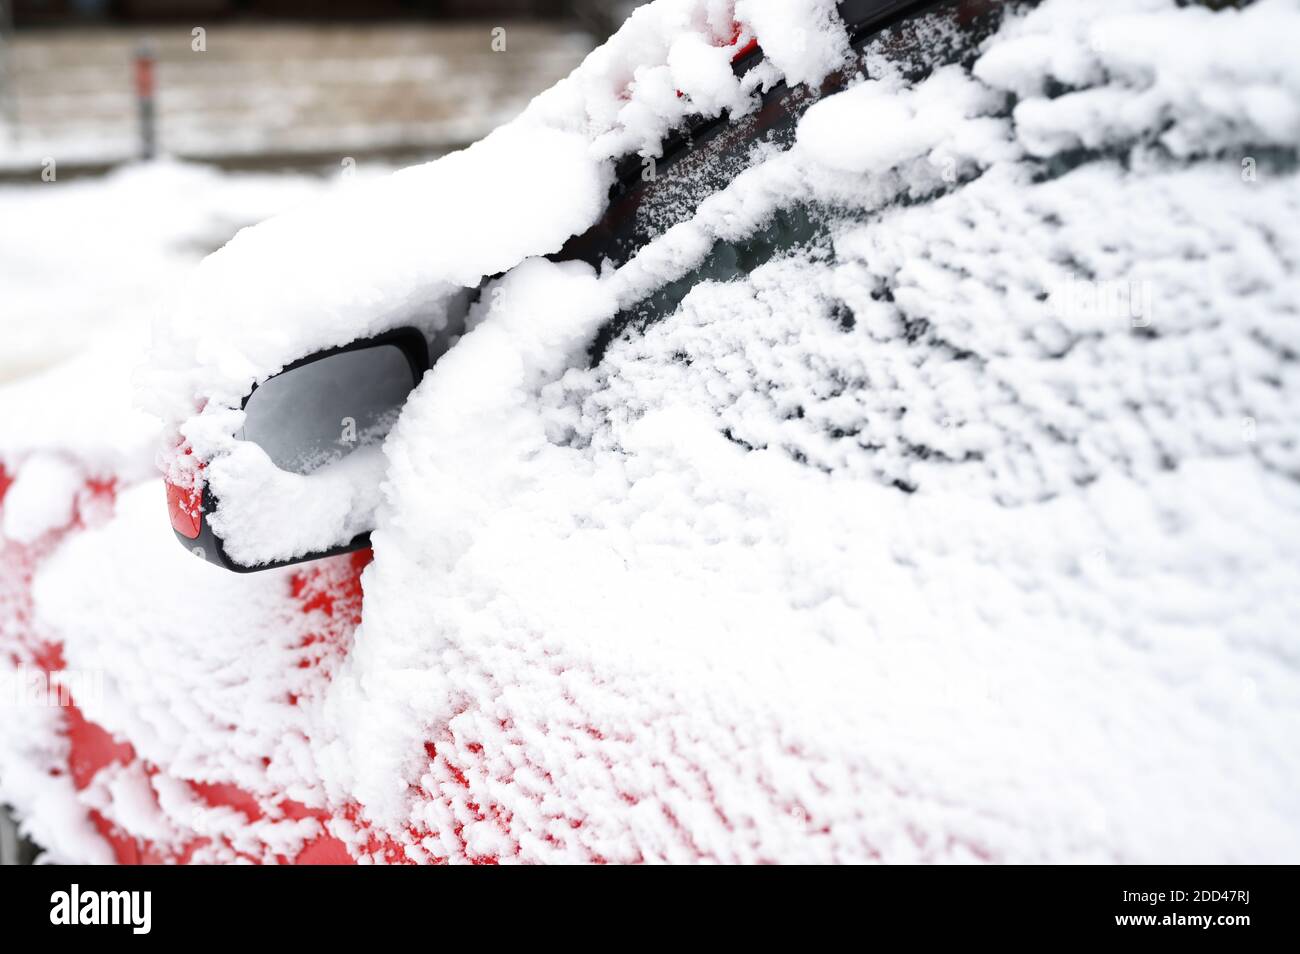 une voiture rouge couverte de neige est garée dans une ville rue pendant la saison hivernale enneigée Banque D'Images